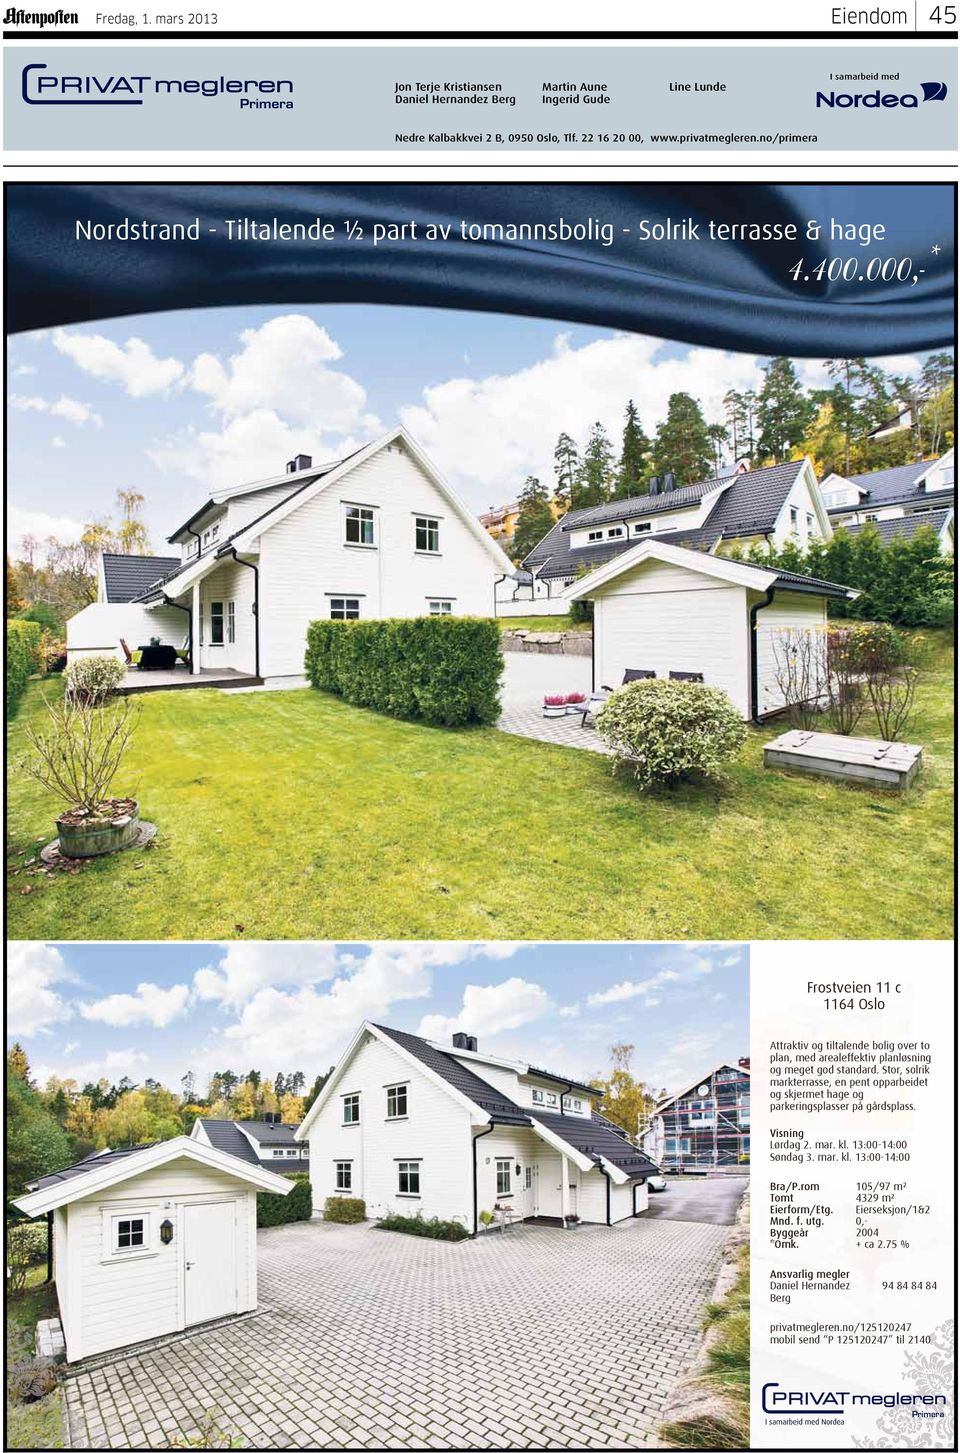 000,-* Frostveien 11 c 1164 Oslo Attraktiv og tiltalende bolig over to plan, med arealeffektiv planløsning og meget god standard.